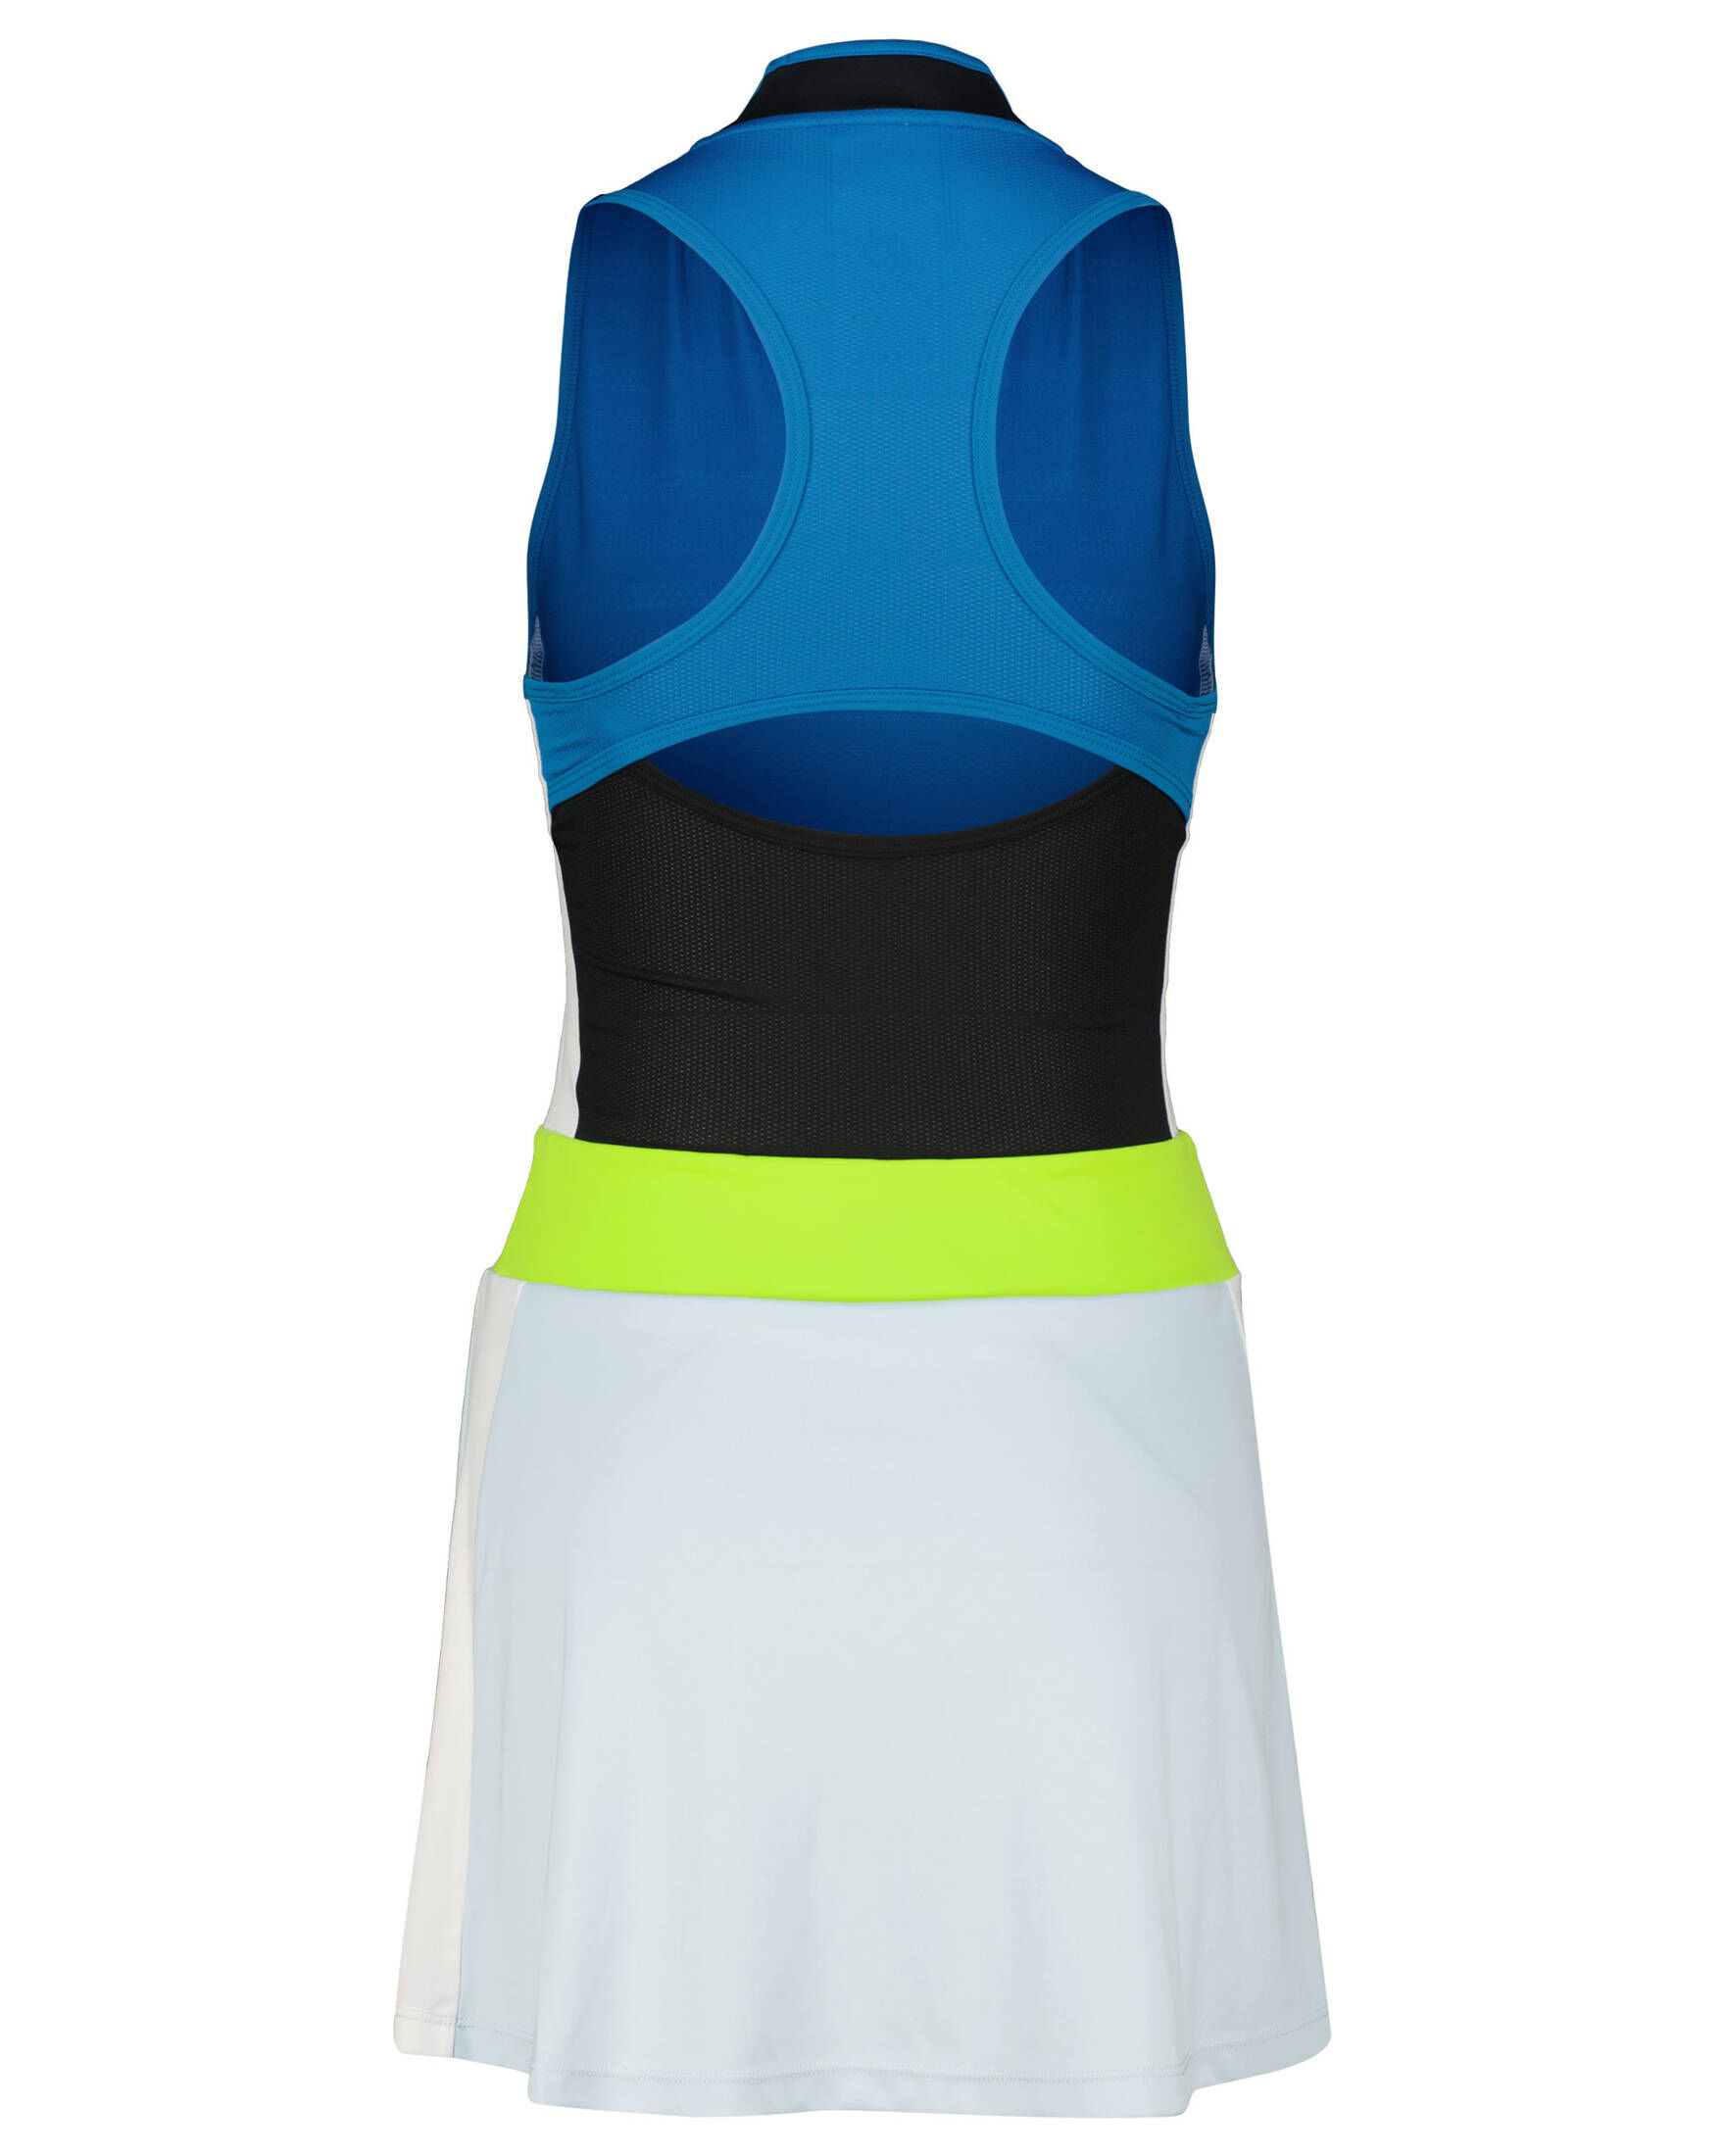 Asics Damen Tenniskleid WOMEN MATCH DRESS kaufen engelhorn